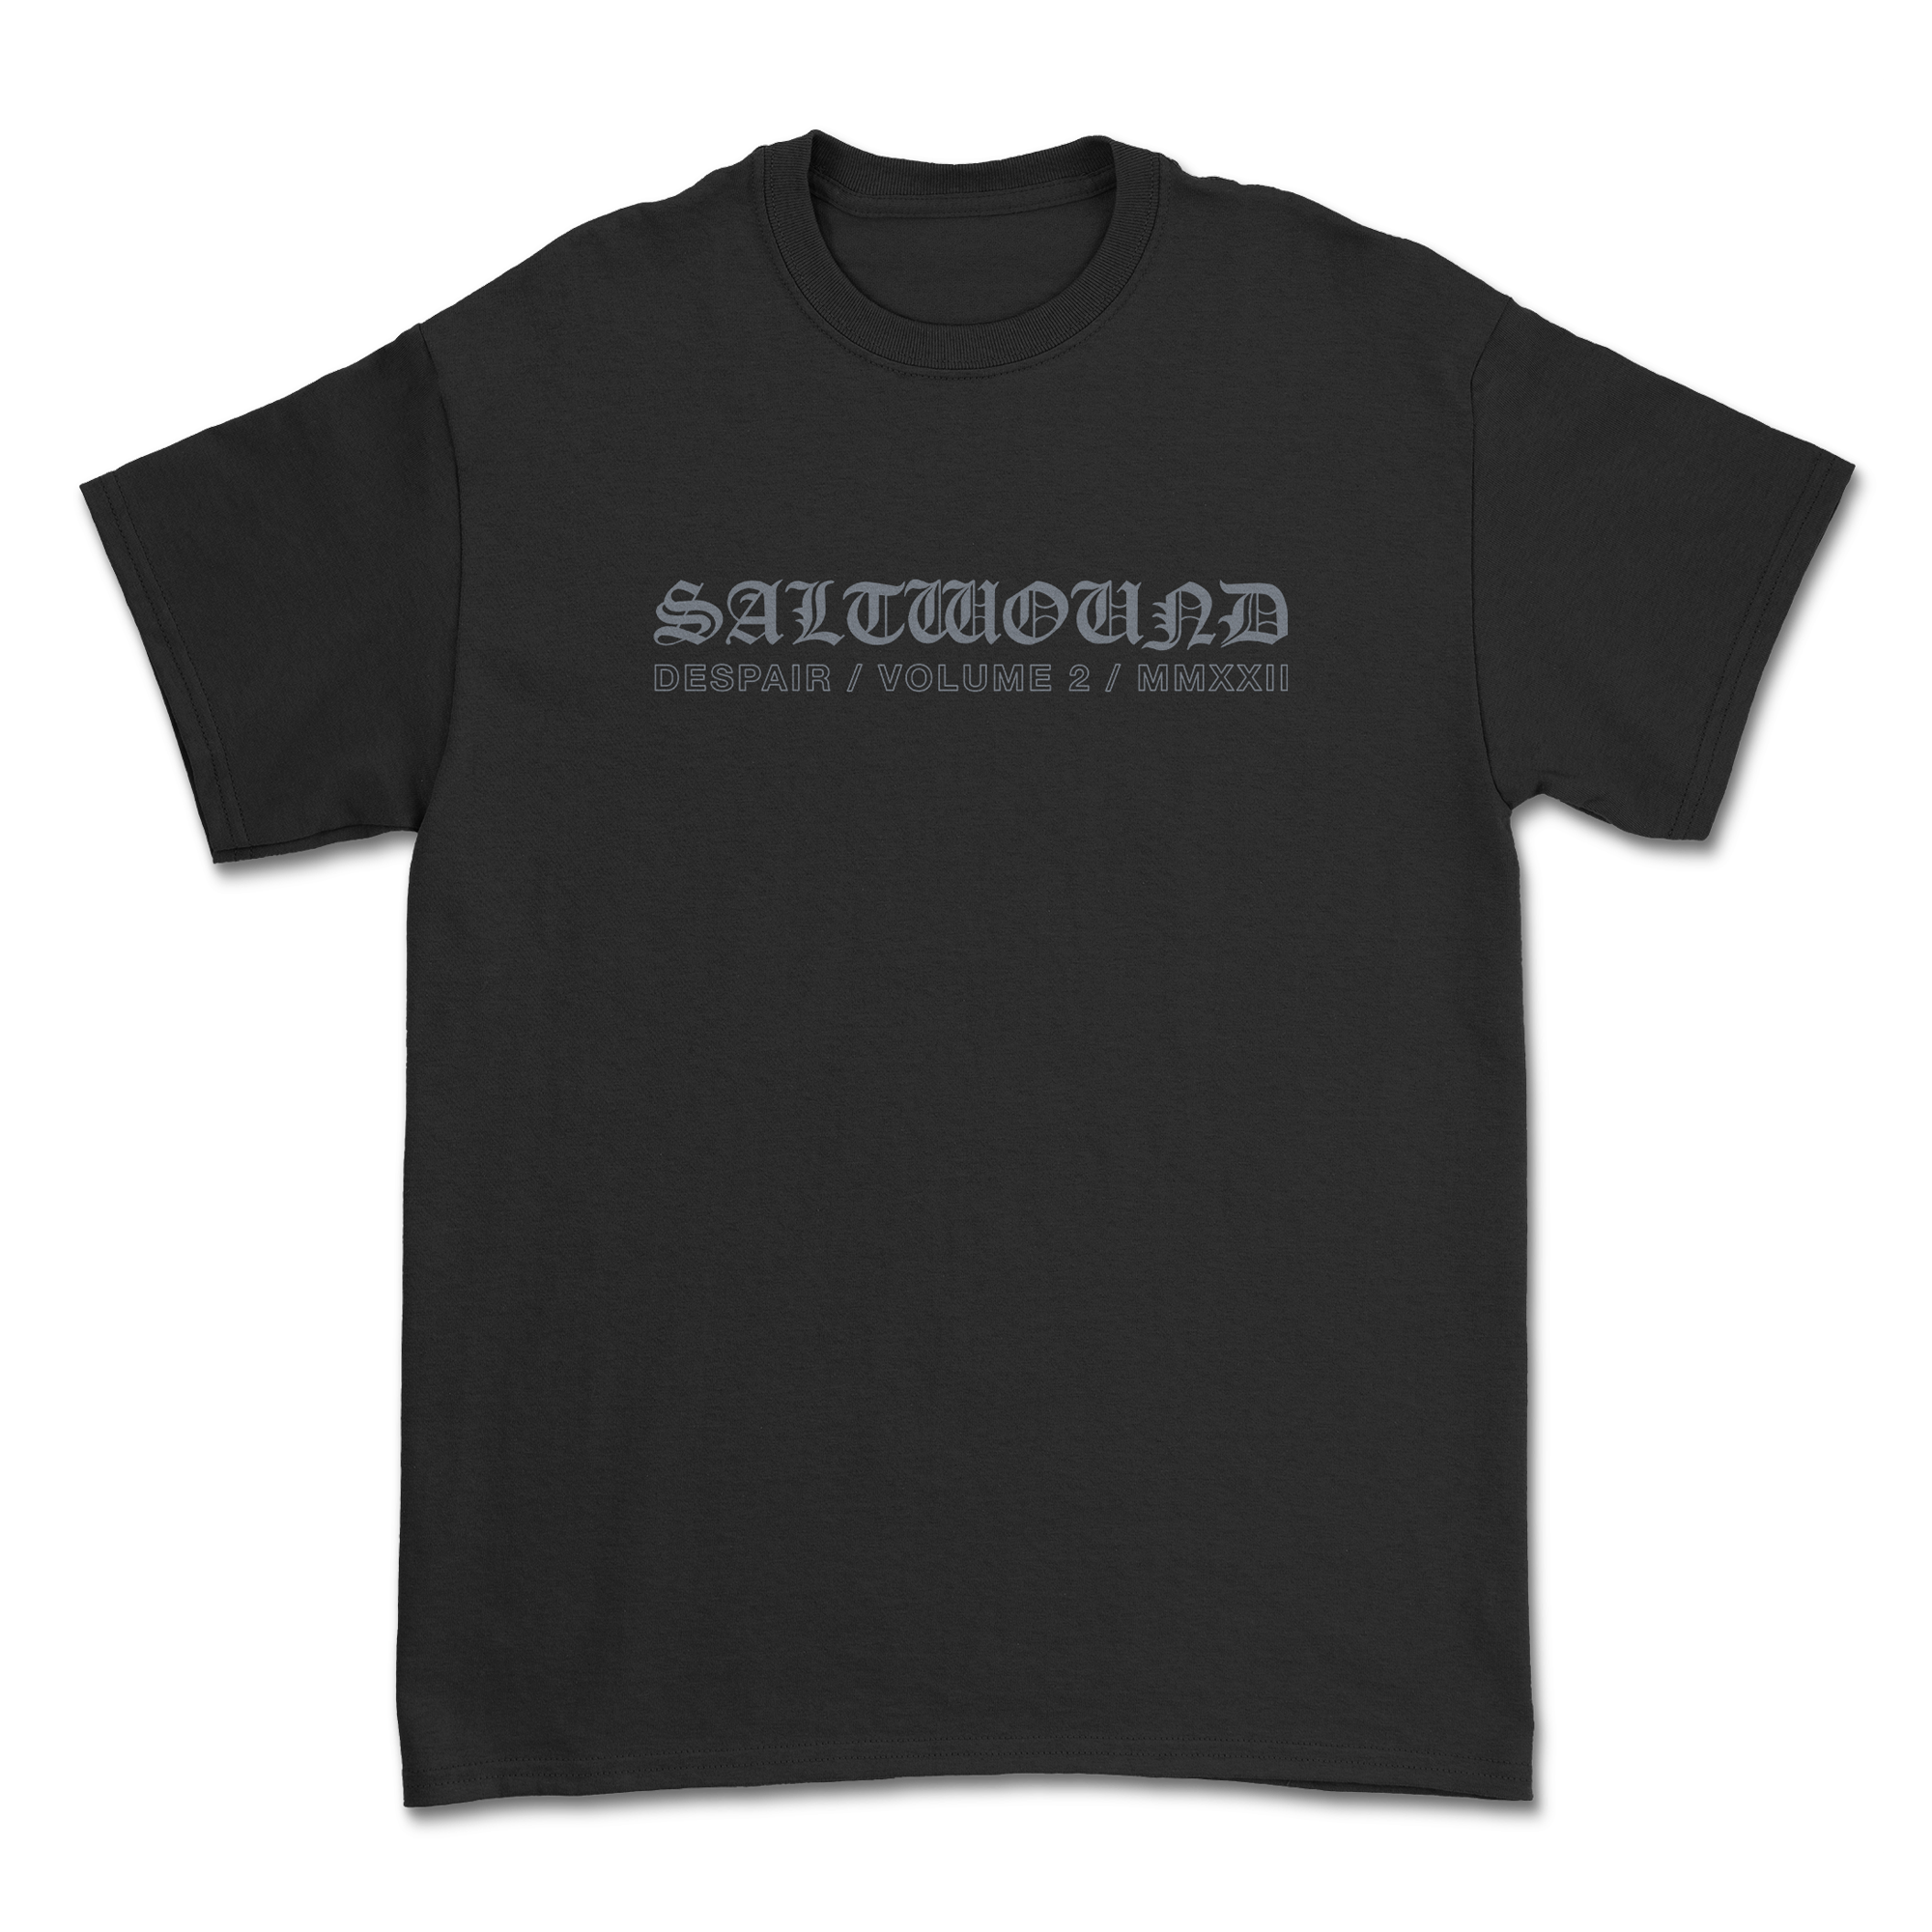 Saltwound - Despair T-Shirt